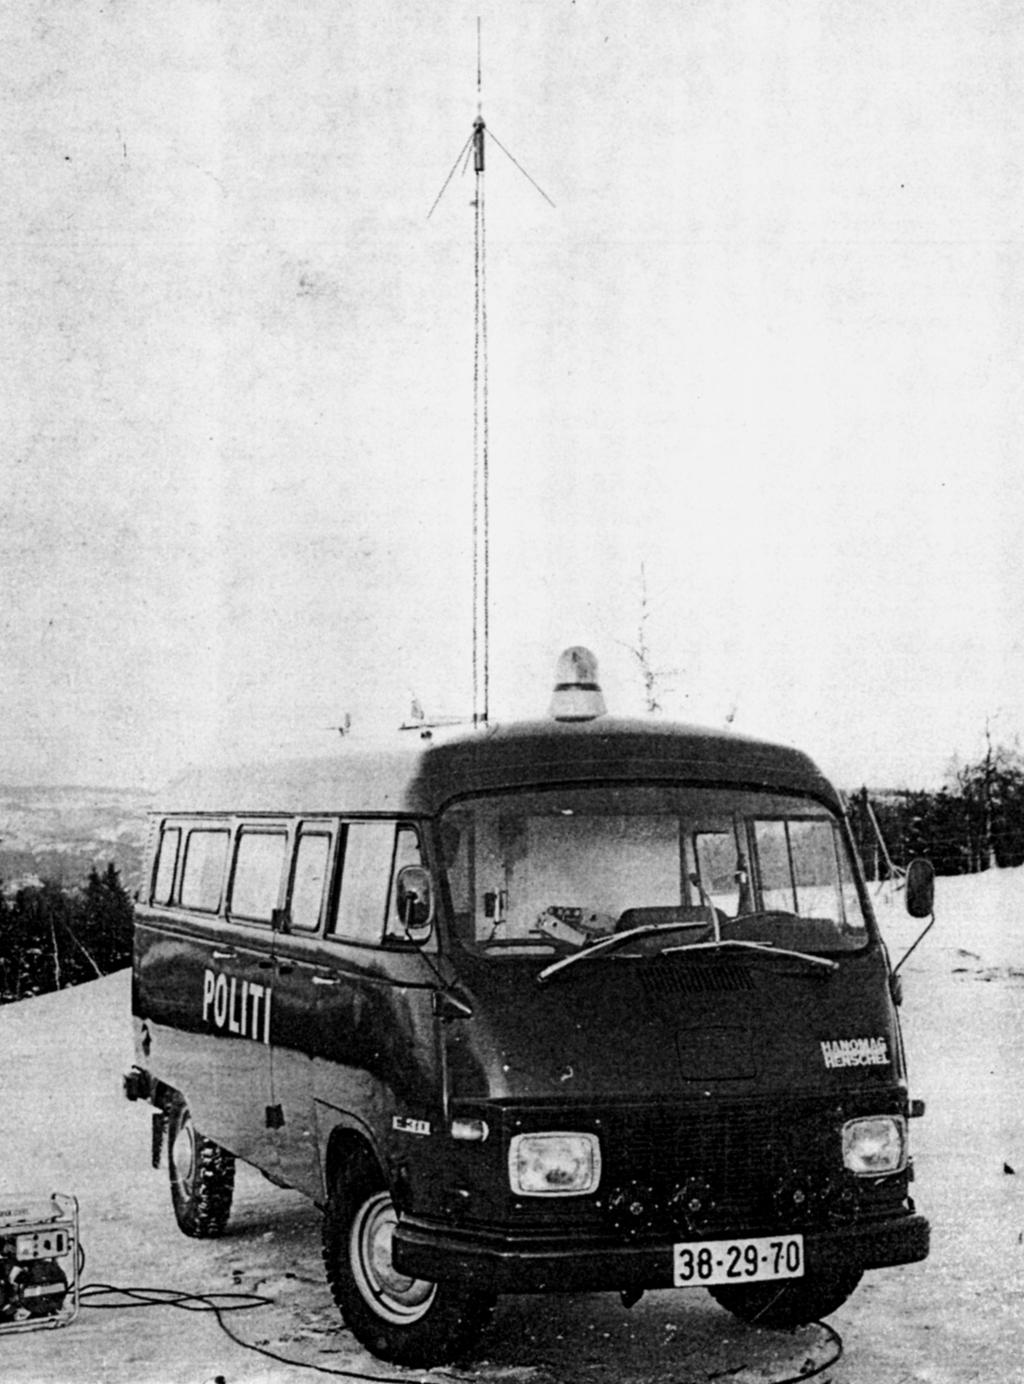 Radioutrustningen: Utstyret var av type SRA CN404T (5 stk.) og ble levert av Radiocom A/S, Oslo. Det var 4 fastmonterte stasjoner, samt 1 stasjon i bærbar koffert (transportabel).